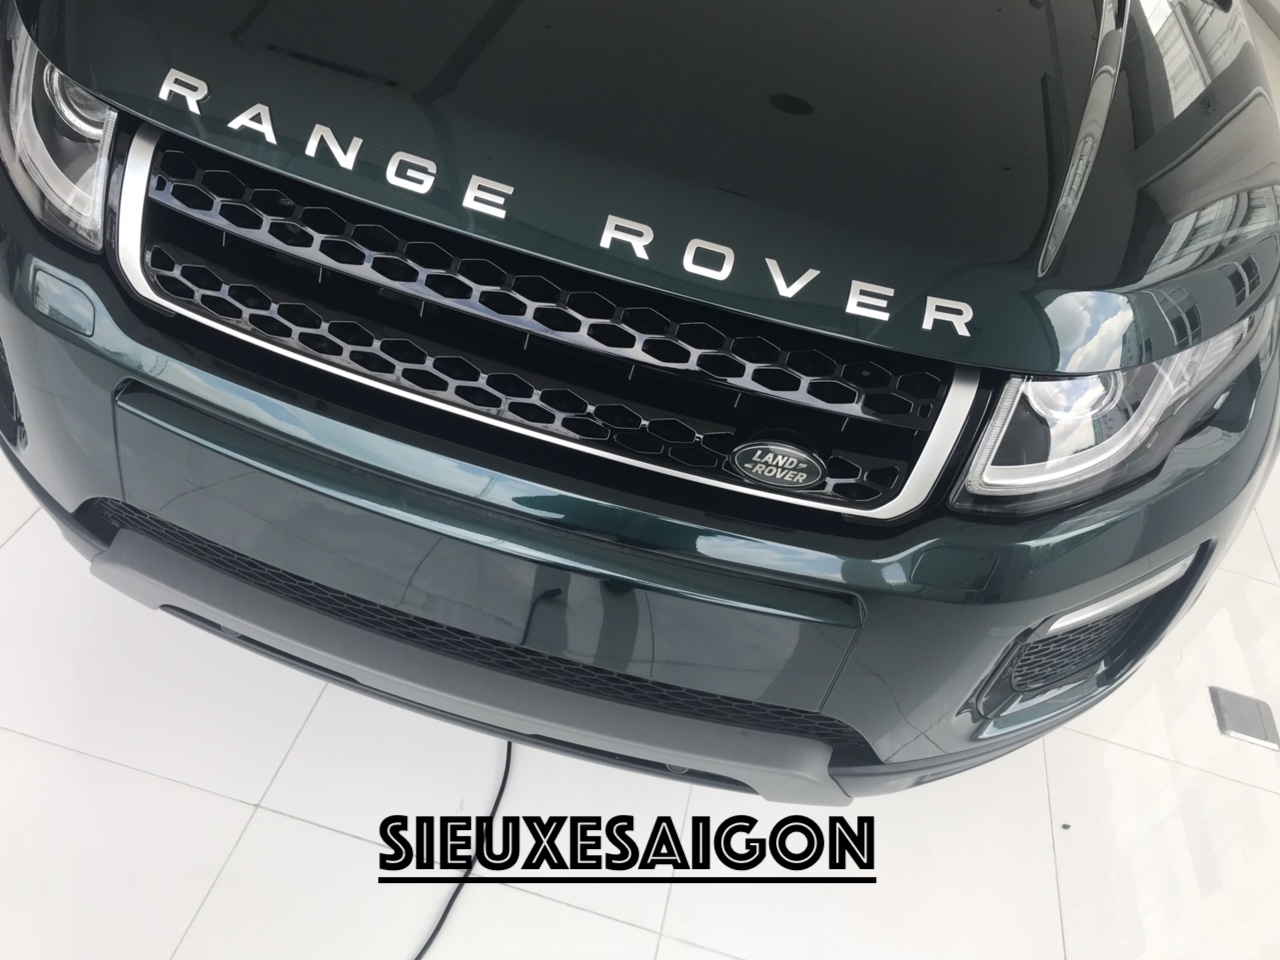 Giá Thấp Nhất Xe Range Rover Chiếc SUV Nhỏ Mang Tên Evoque Đời 2018-2019, Evoque HSE, Evoque SE Plus 2020, Xe 5 Chỗ Màu Xanh Rêu Aintree Green, 